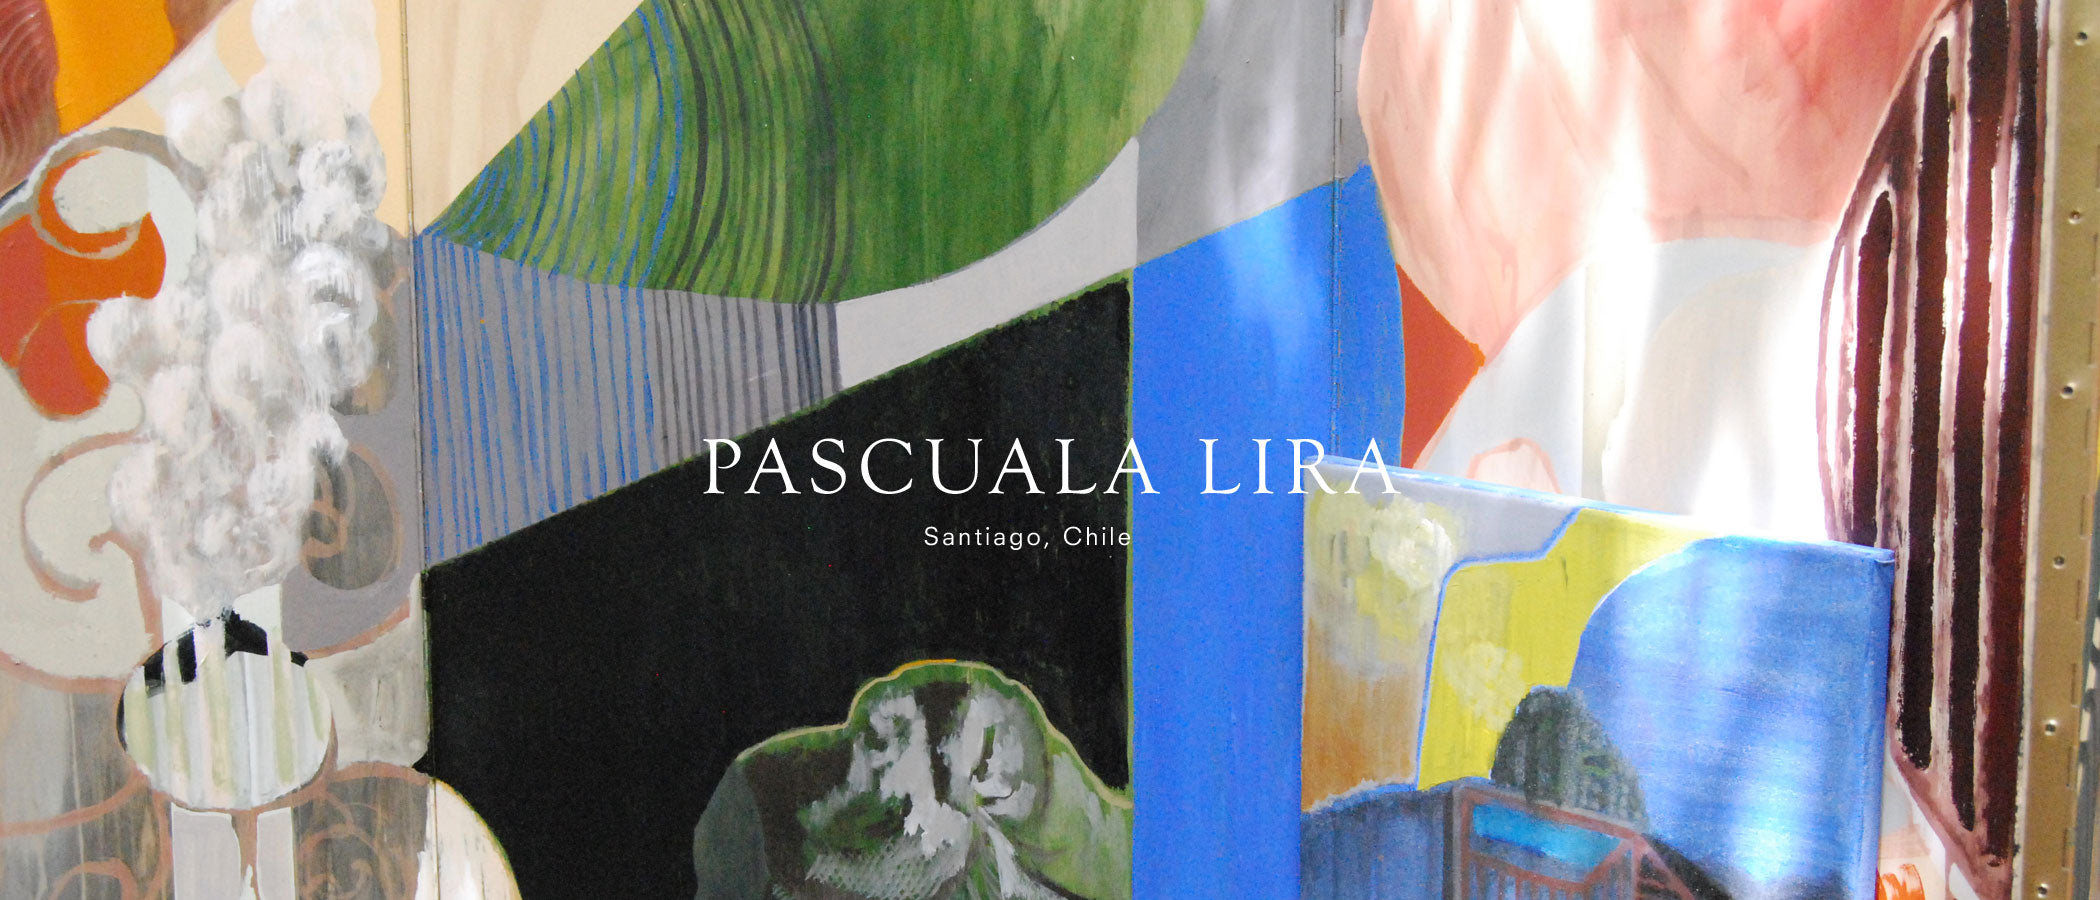 Pascuala Lira